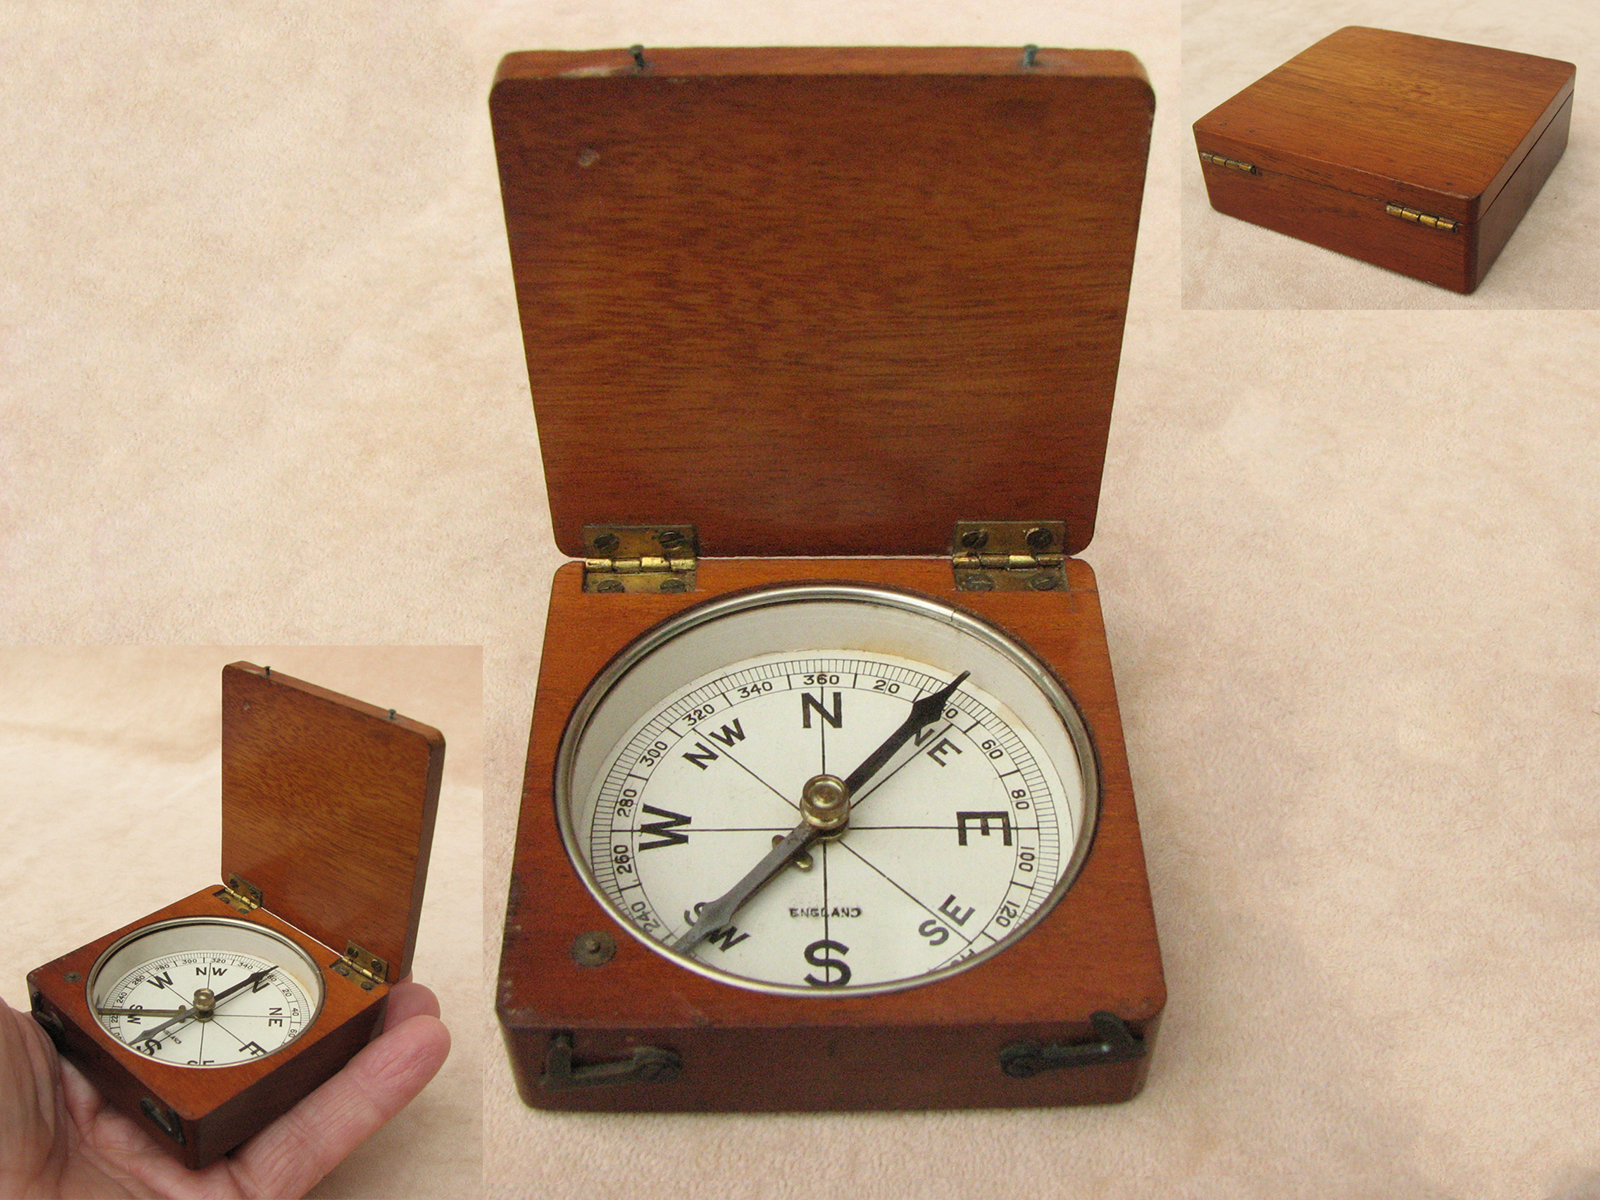 Late Victorian mahogany cased pocket compass